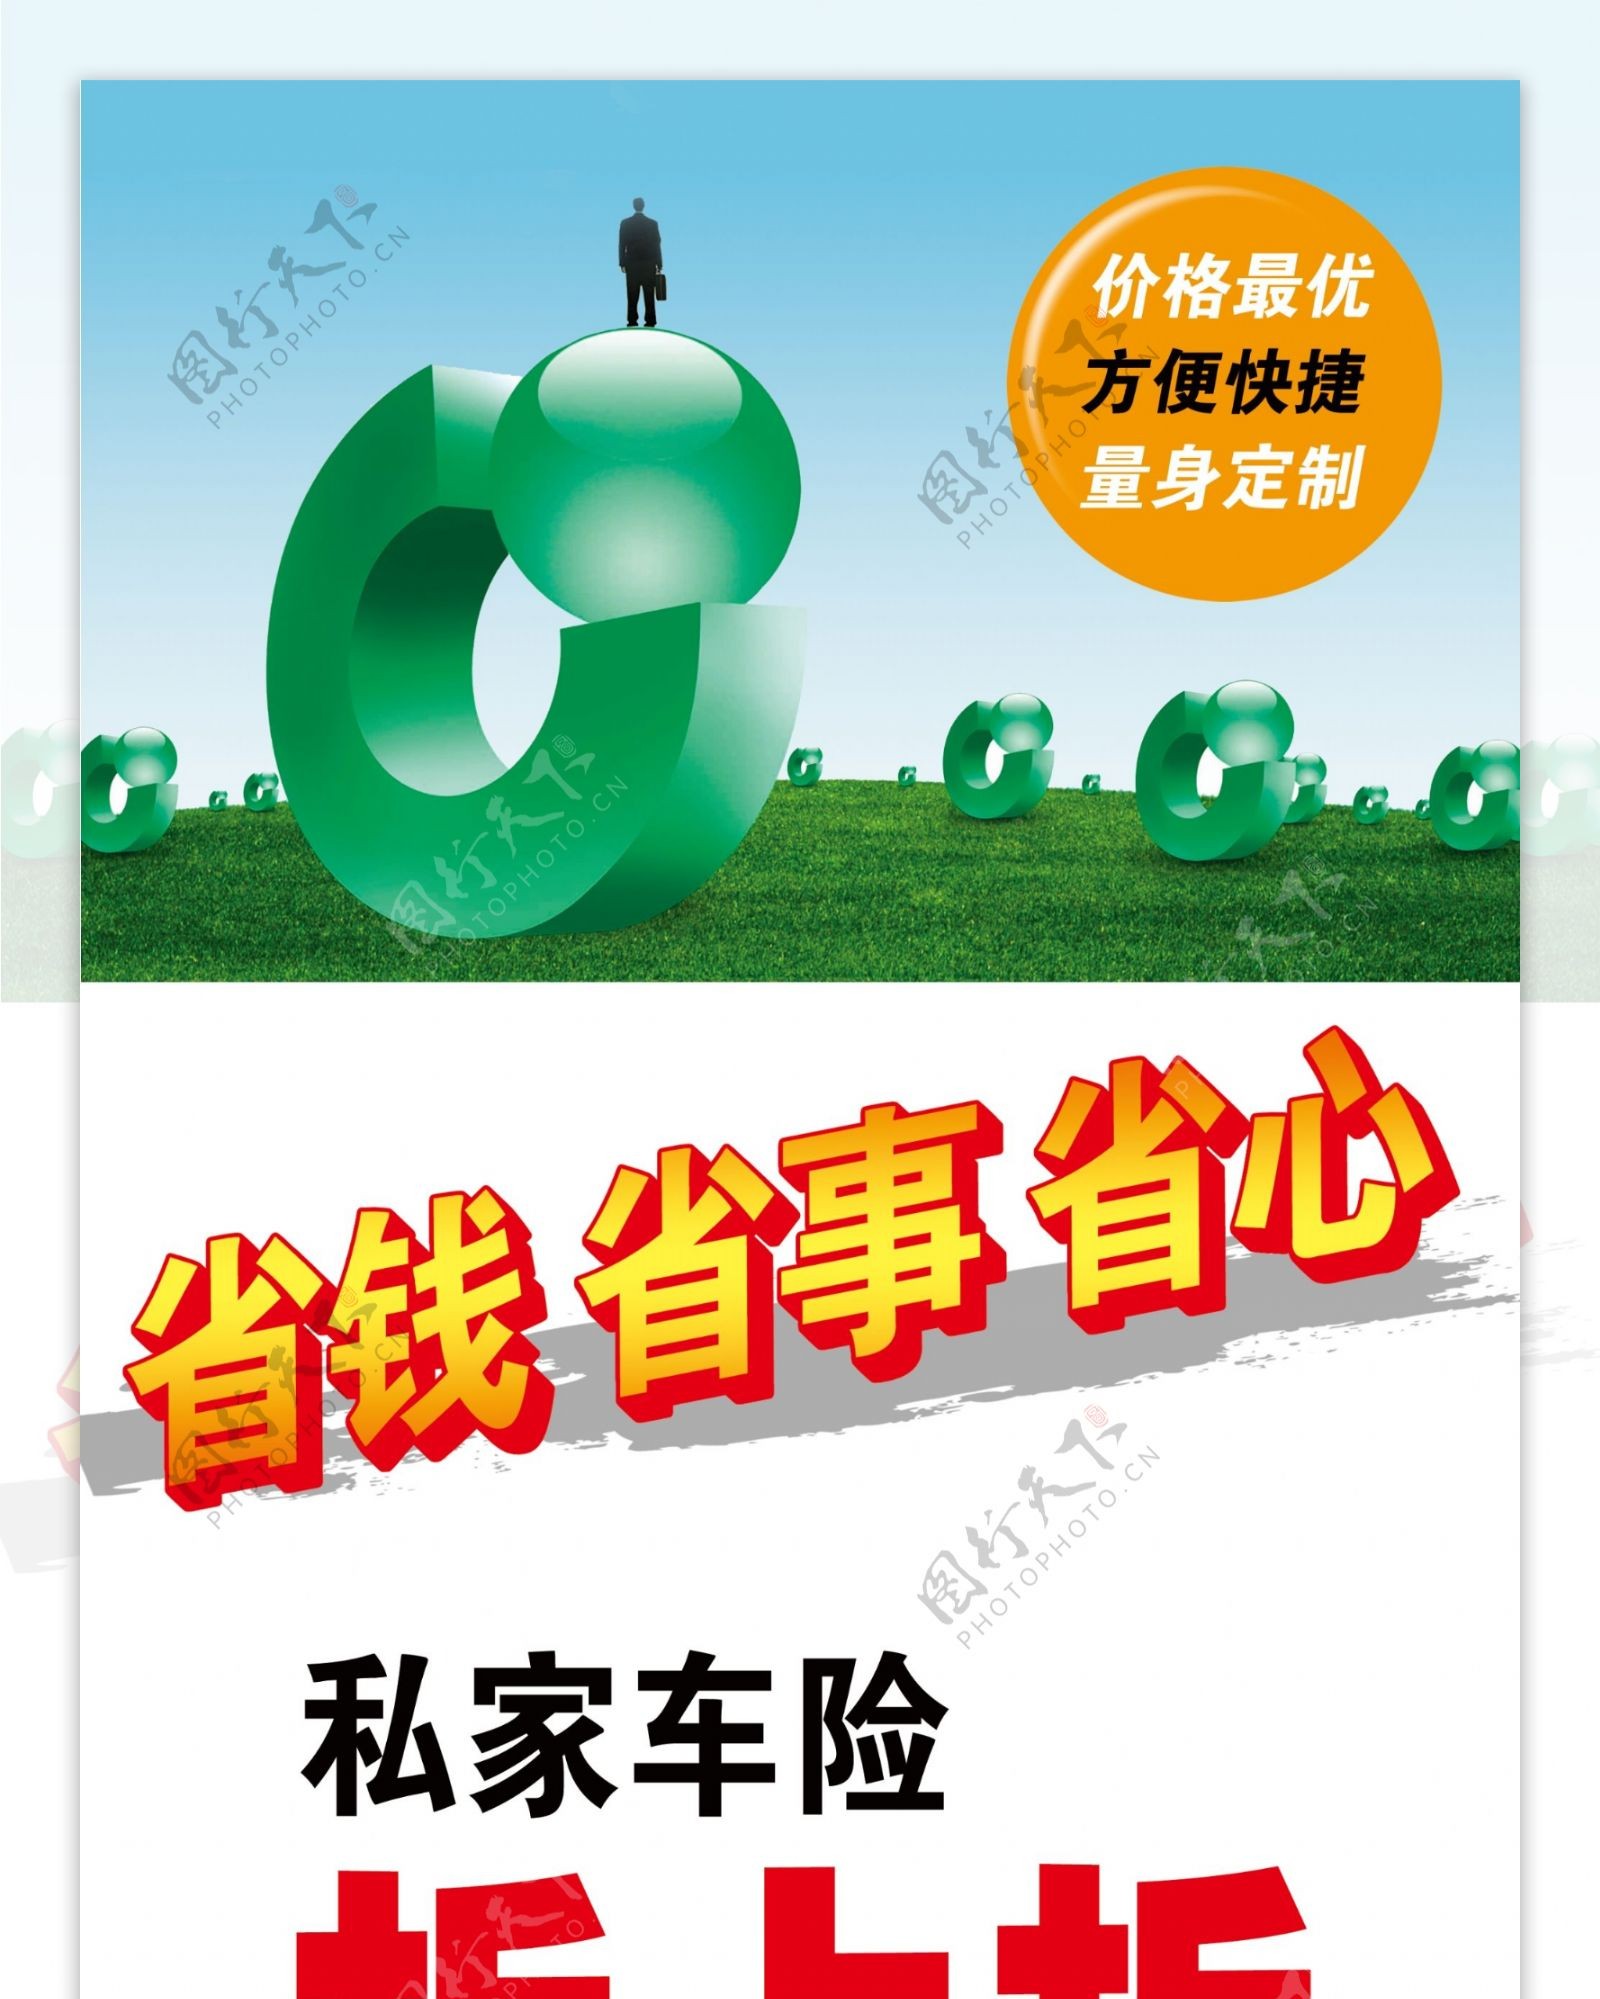 中国人寿海报